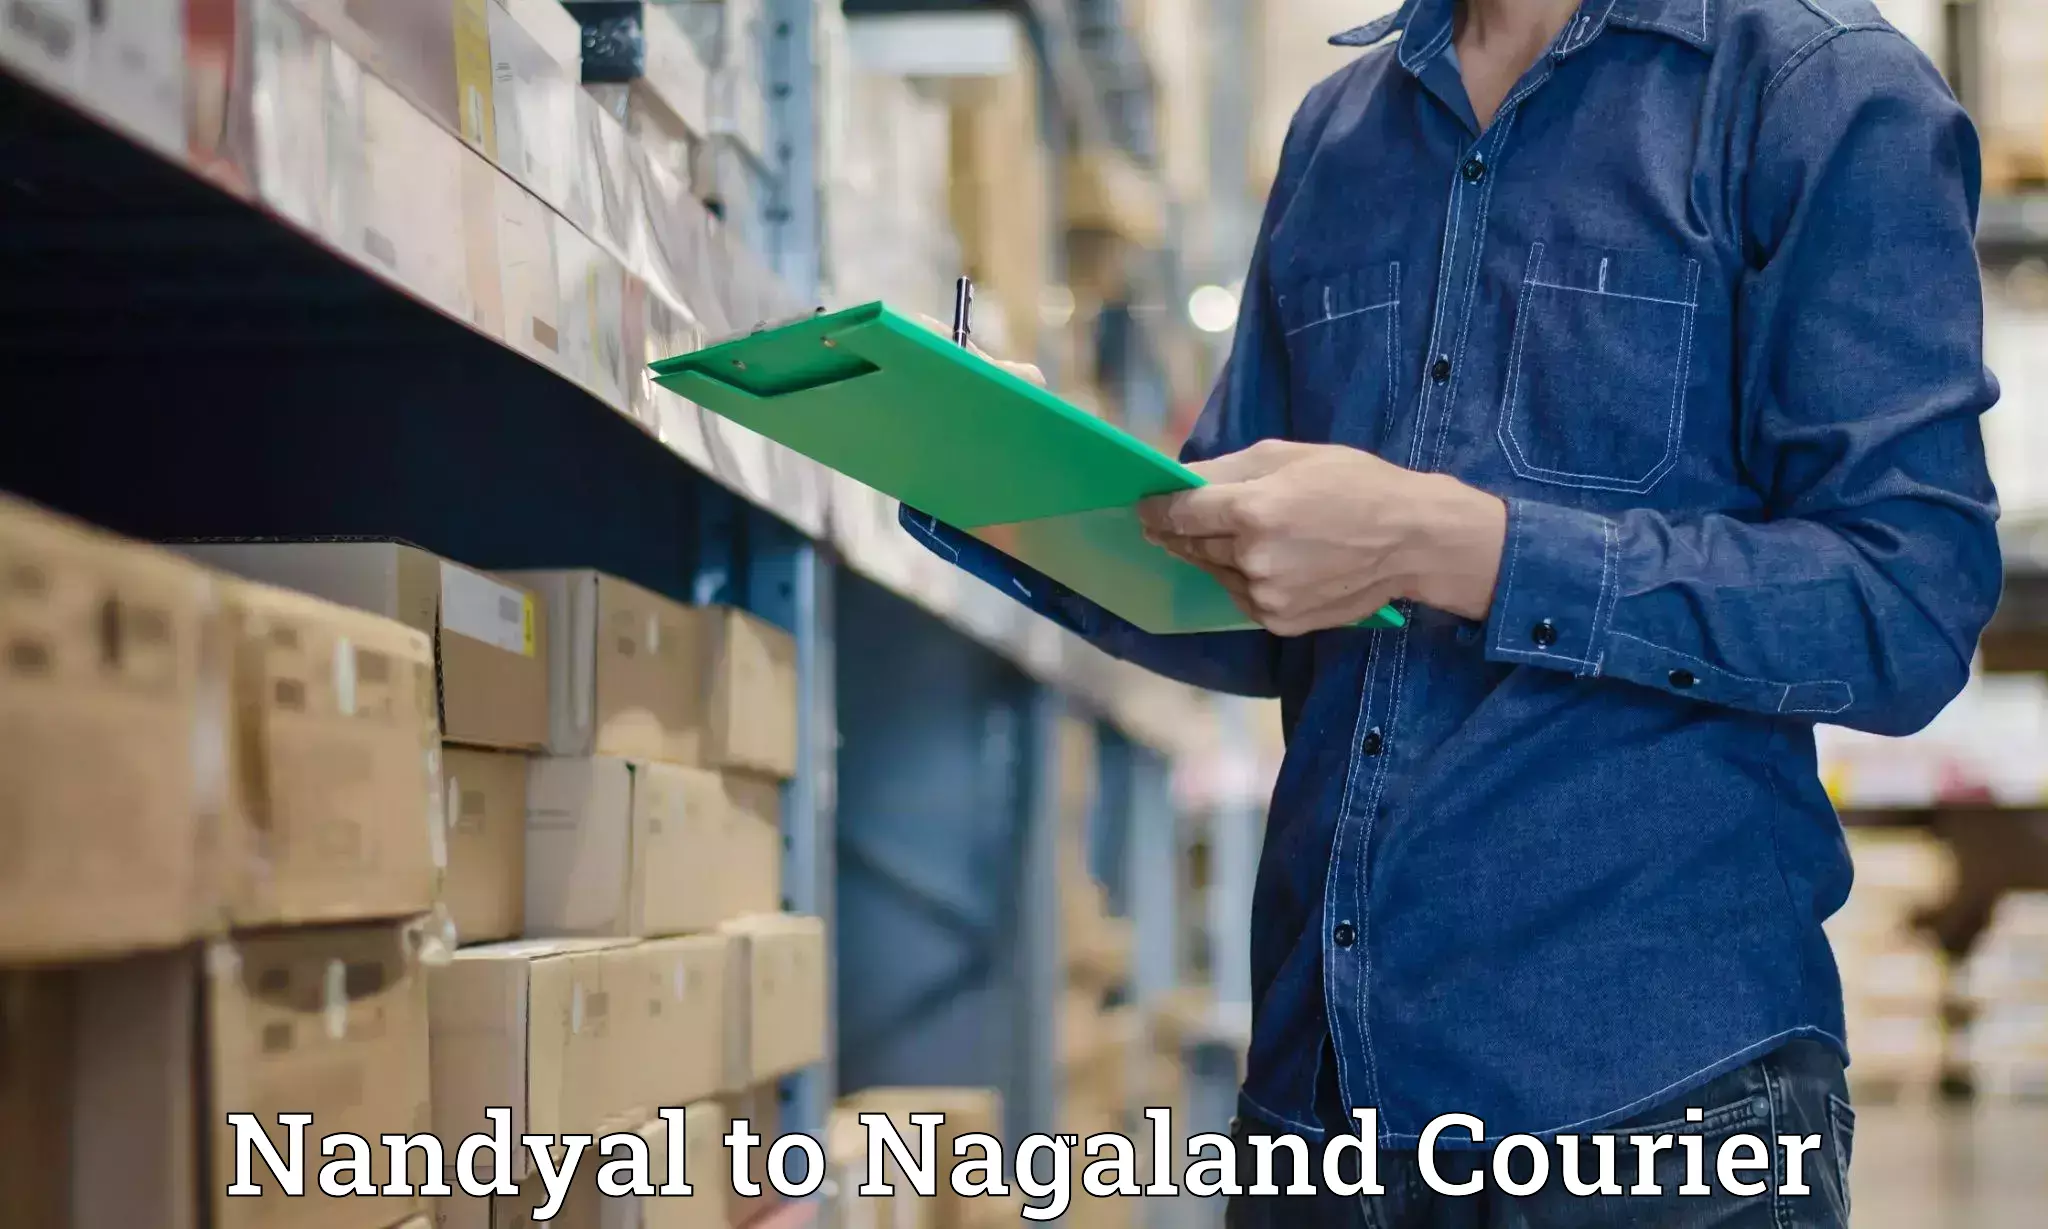 Fast shipping solutions Nandyal to Nagaland